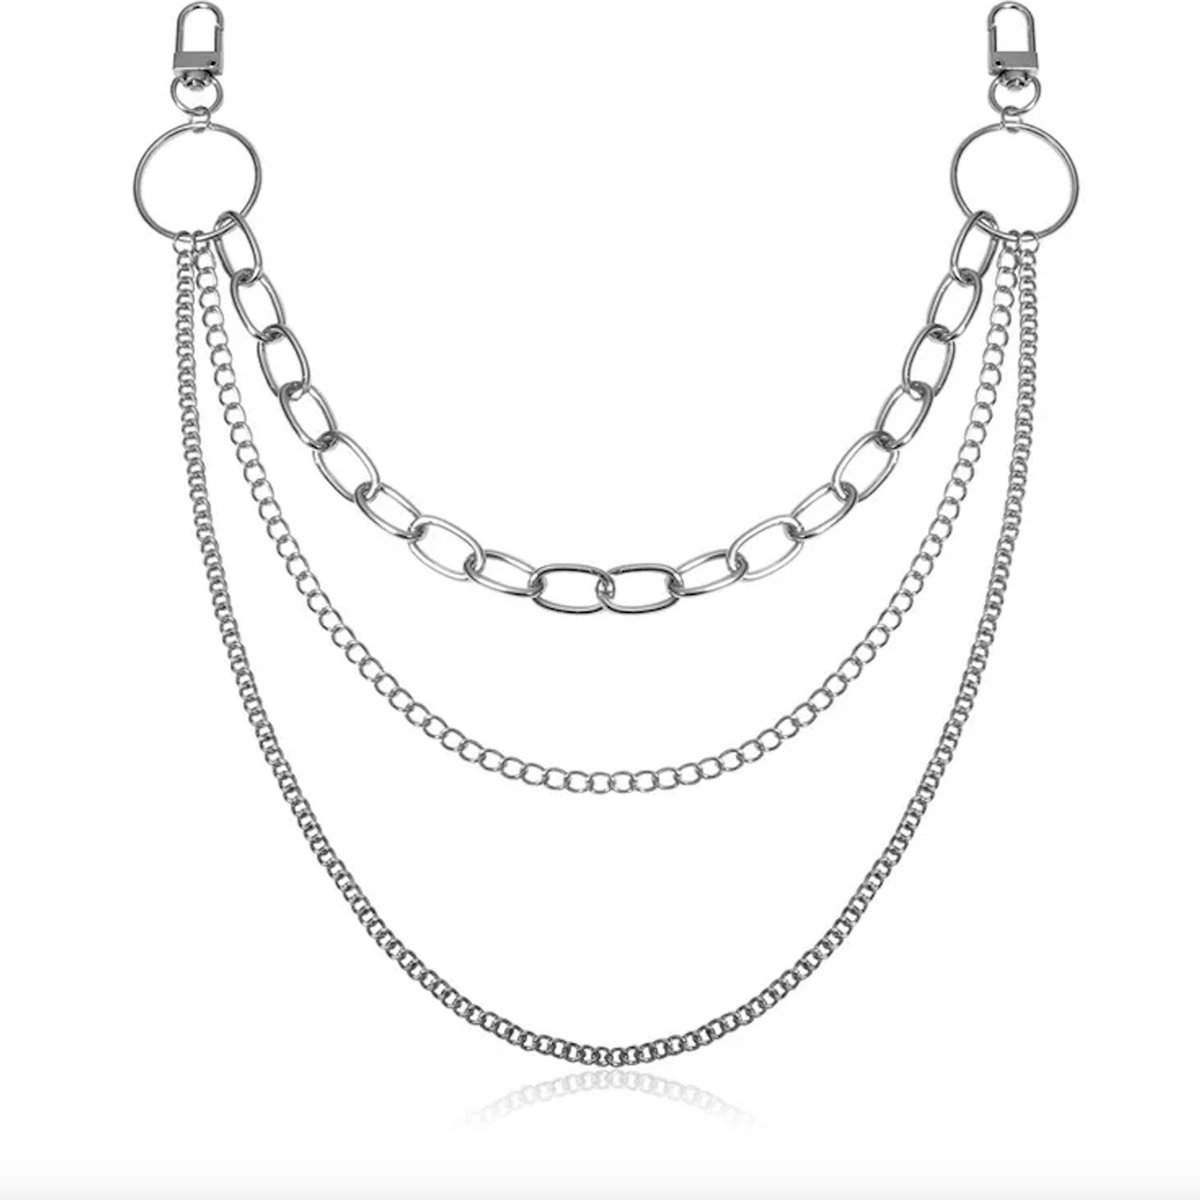 ASTRADAVI Taille Ketting - Waist Chain - 3 Lagen Metalen Ketting voor Dames - Open Maat - Geschikt voor de Meeste Tailleomtrek - Zilver